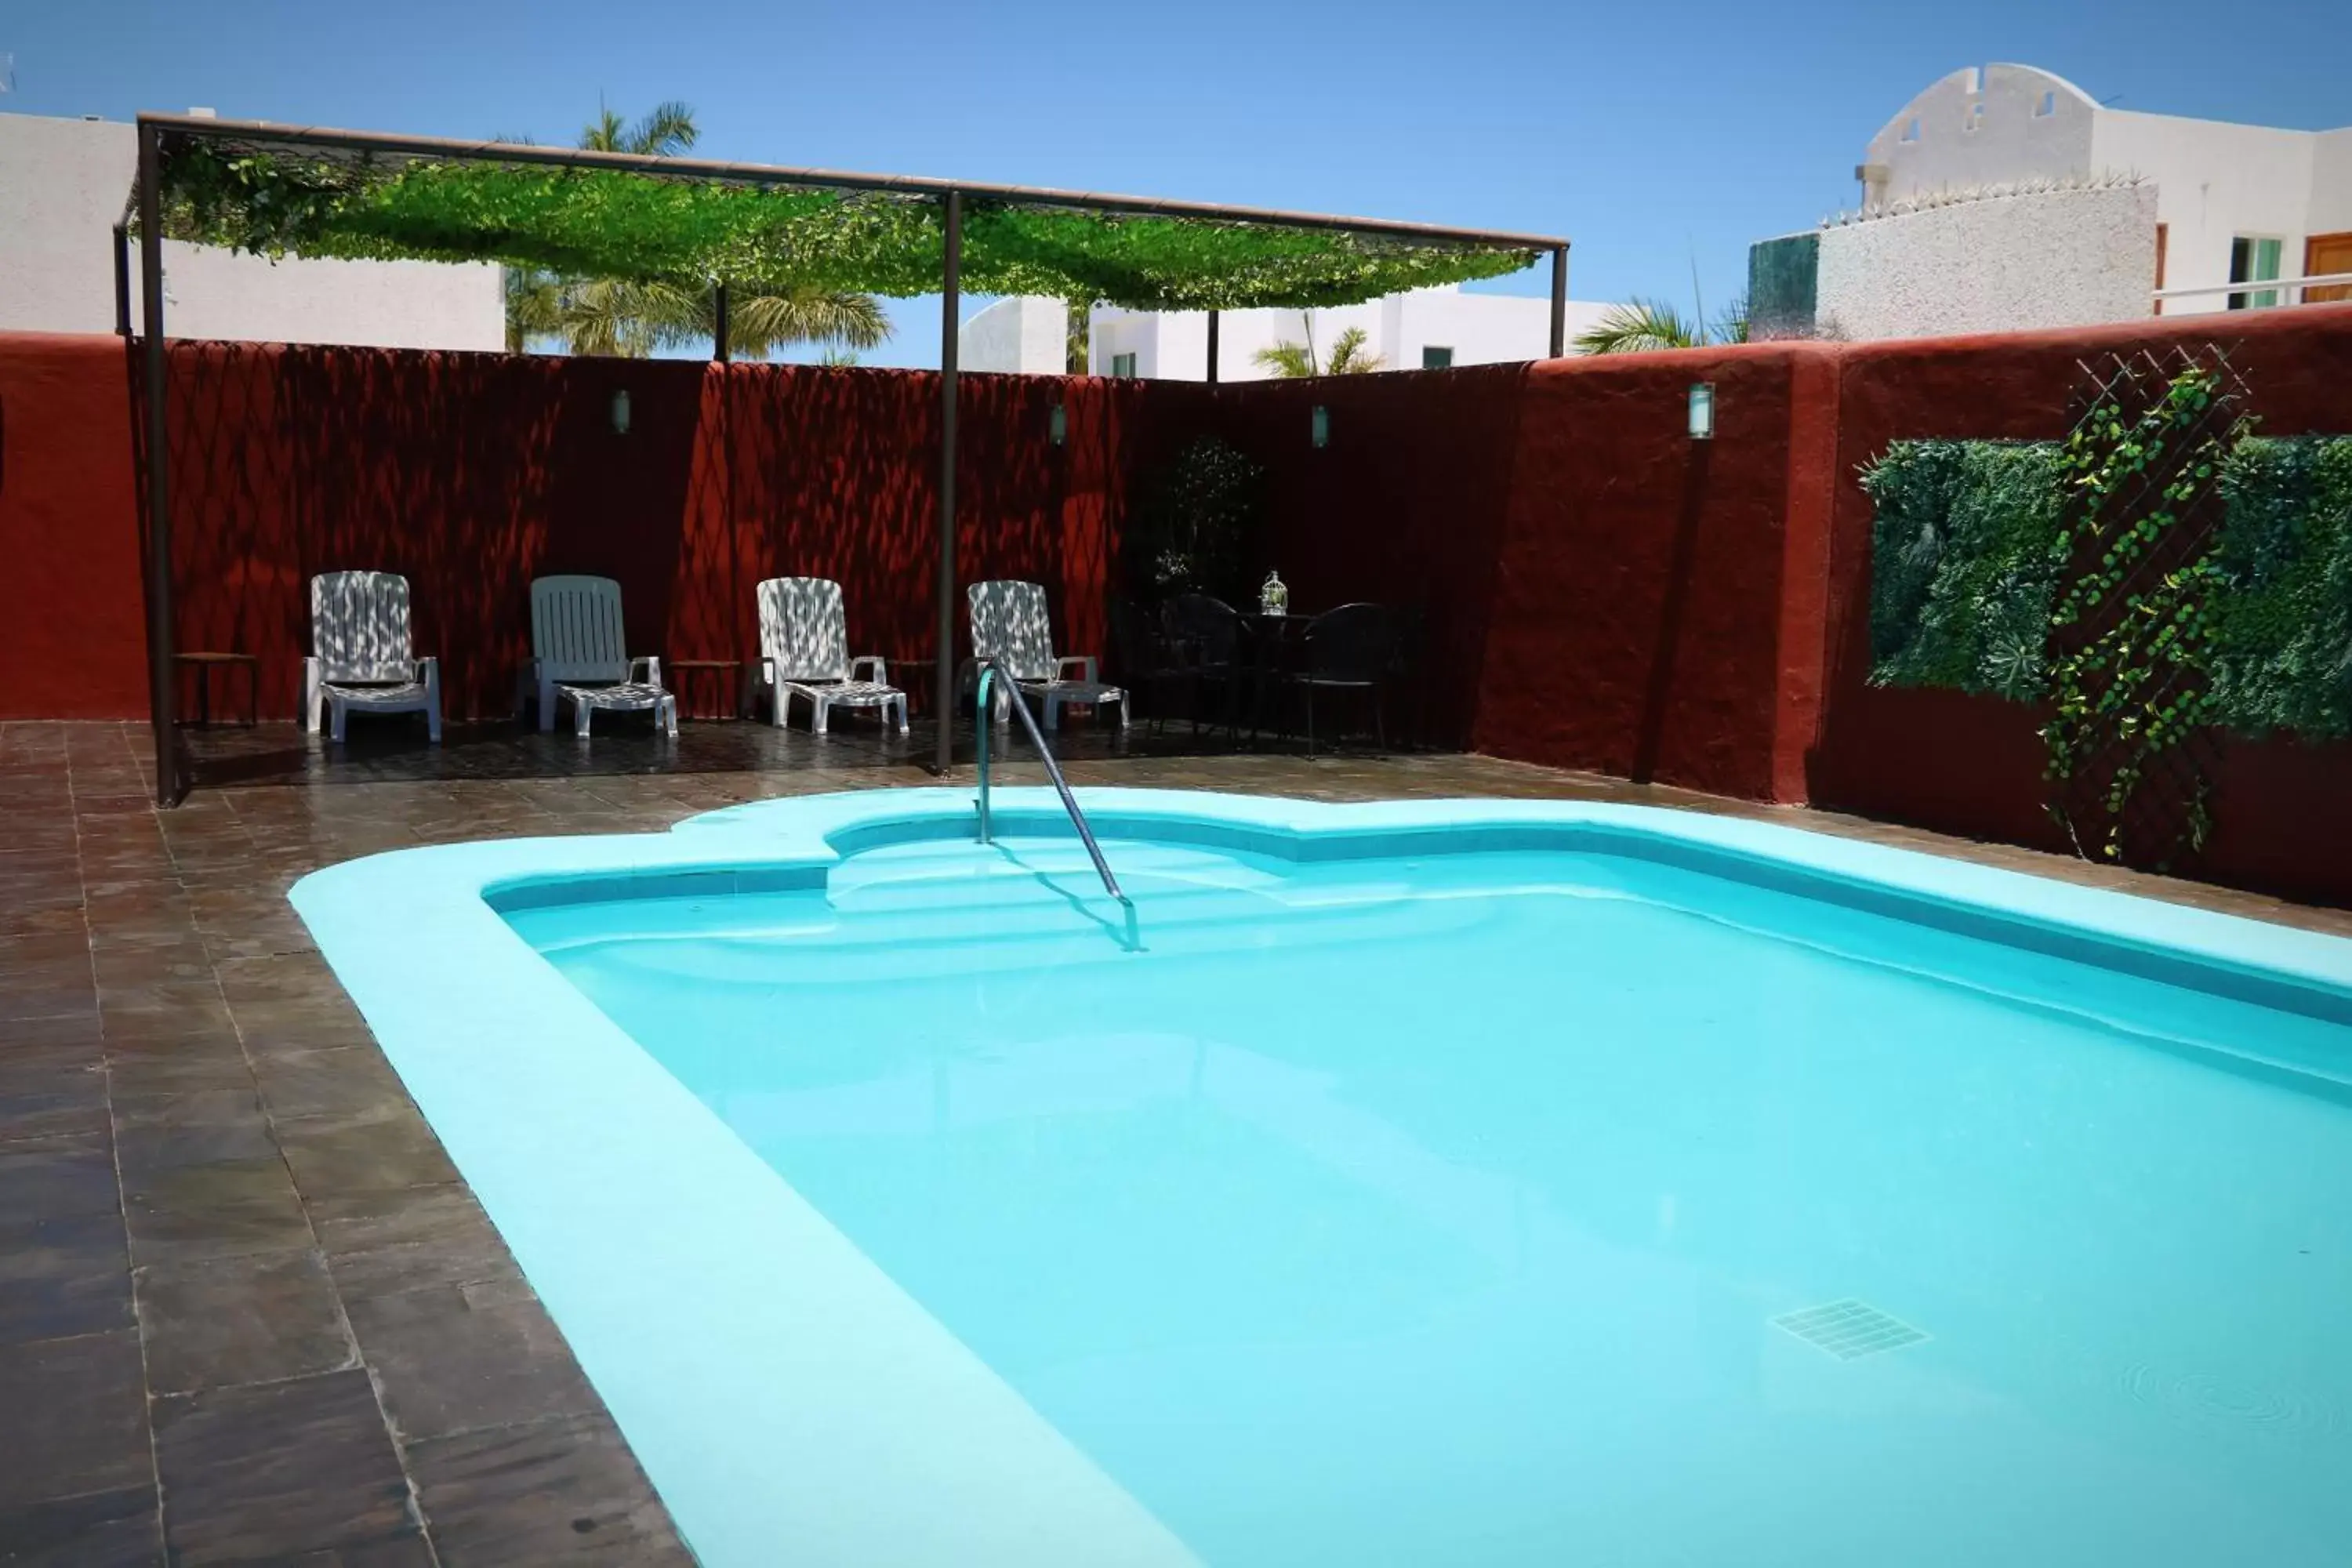 Swimming Pool in Hotel Zar La Paz